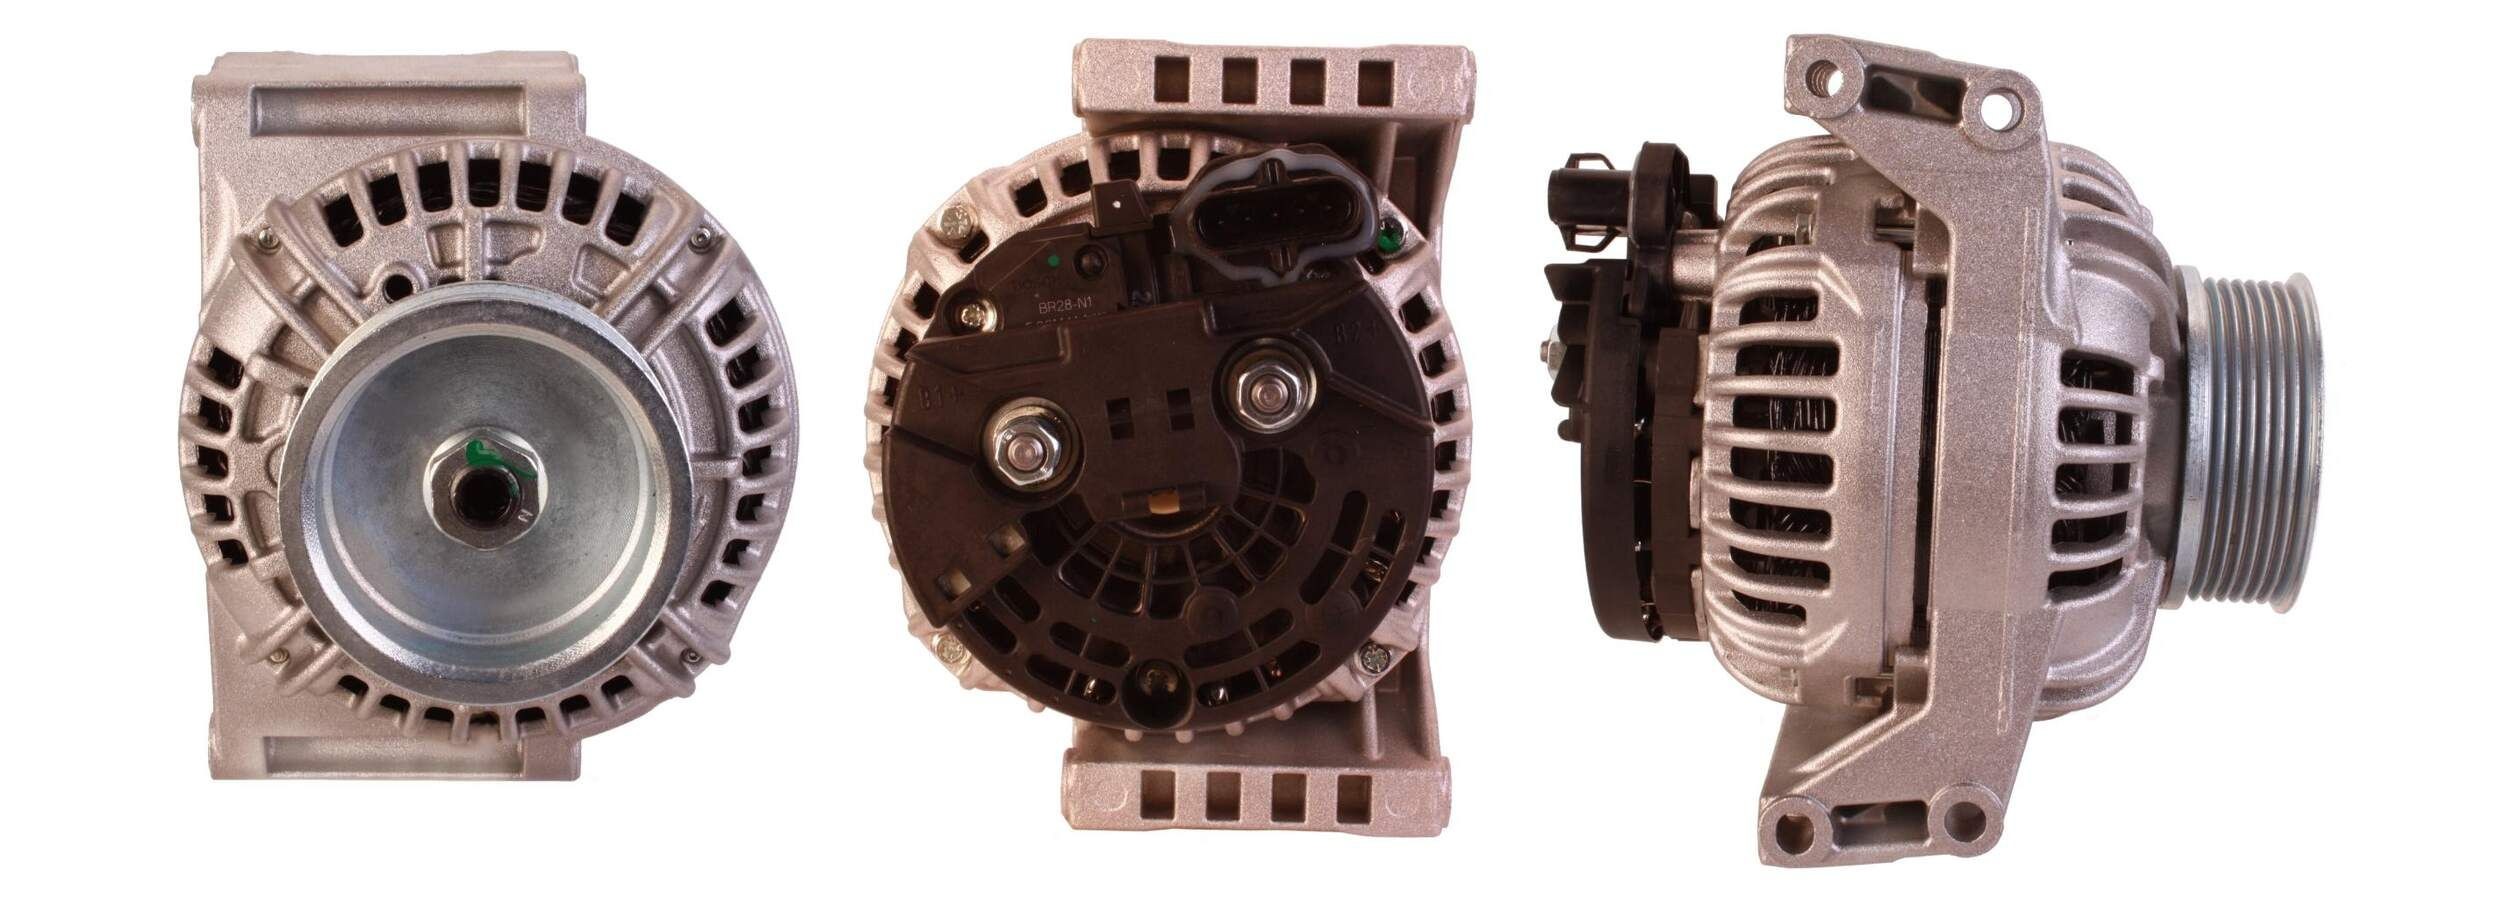 LUCAS 24V, 110A, M8 B+, W-L-15-S-DFM, 0167, W-L-15-S-DFM (167), Ø 86 mm Number of ribs: 7 Generator LRA03268 buy